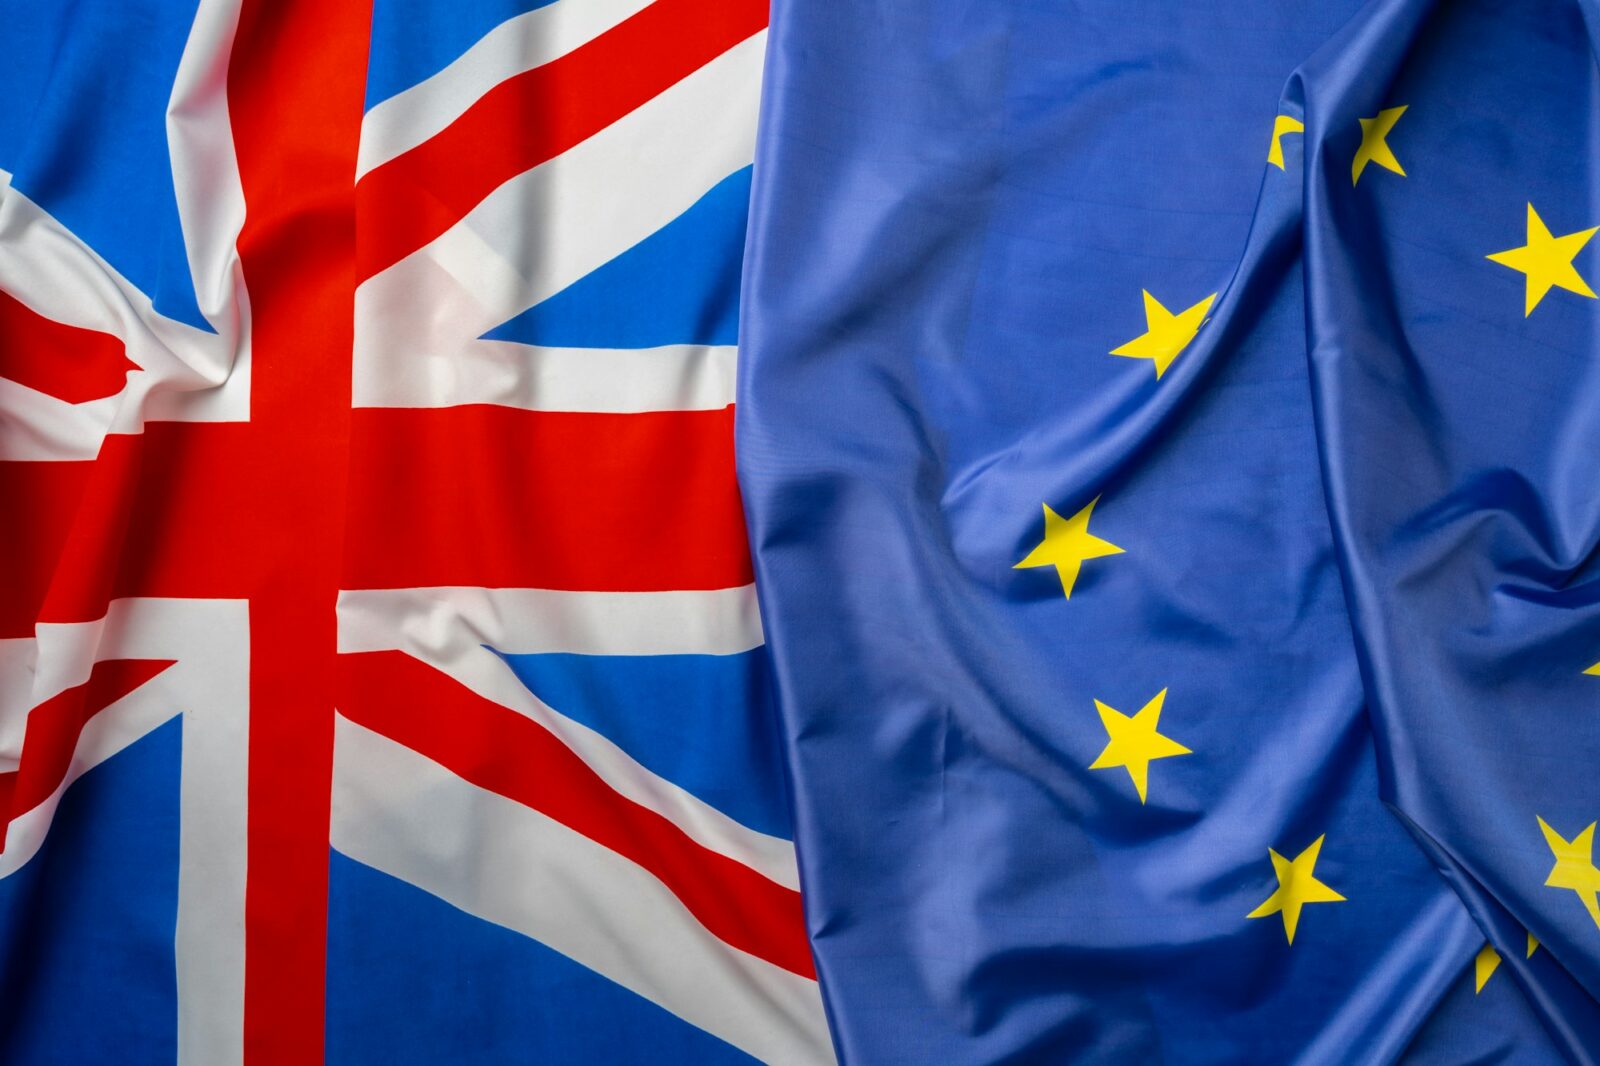 Flaggen des Vereinigten Königreichs und der Europäischen Union zusammengefaltet